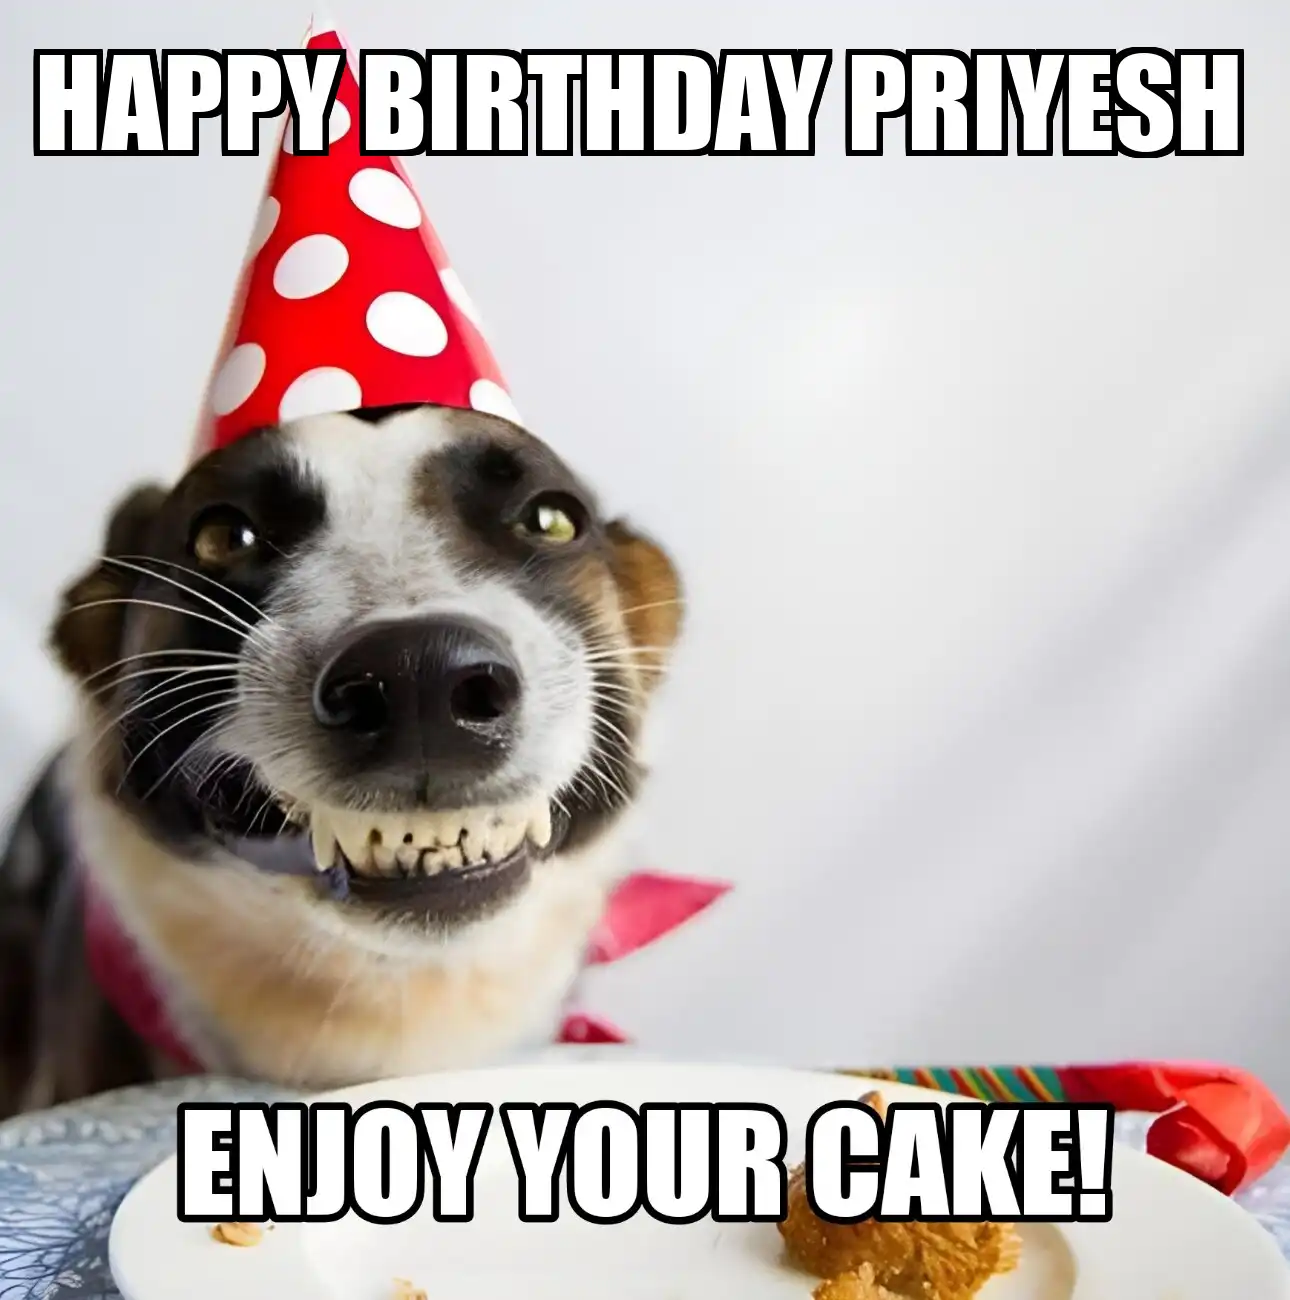 Happy Birthday Priyesh Enjoy Your Cake Dog Meme